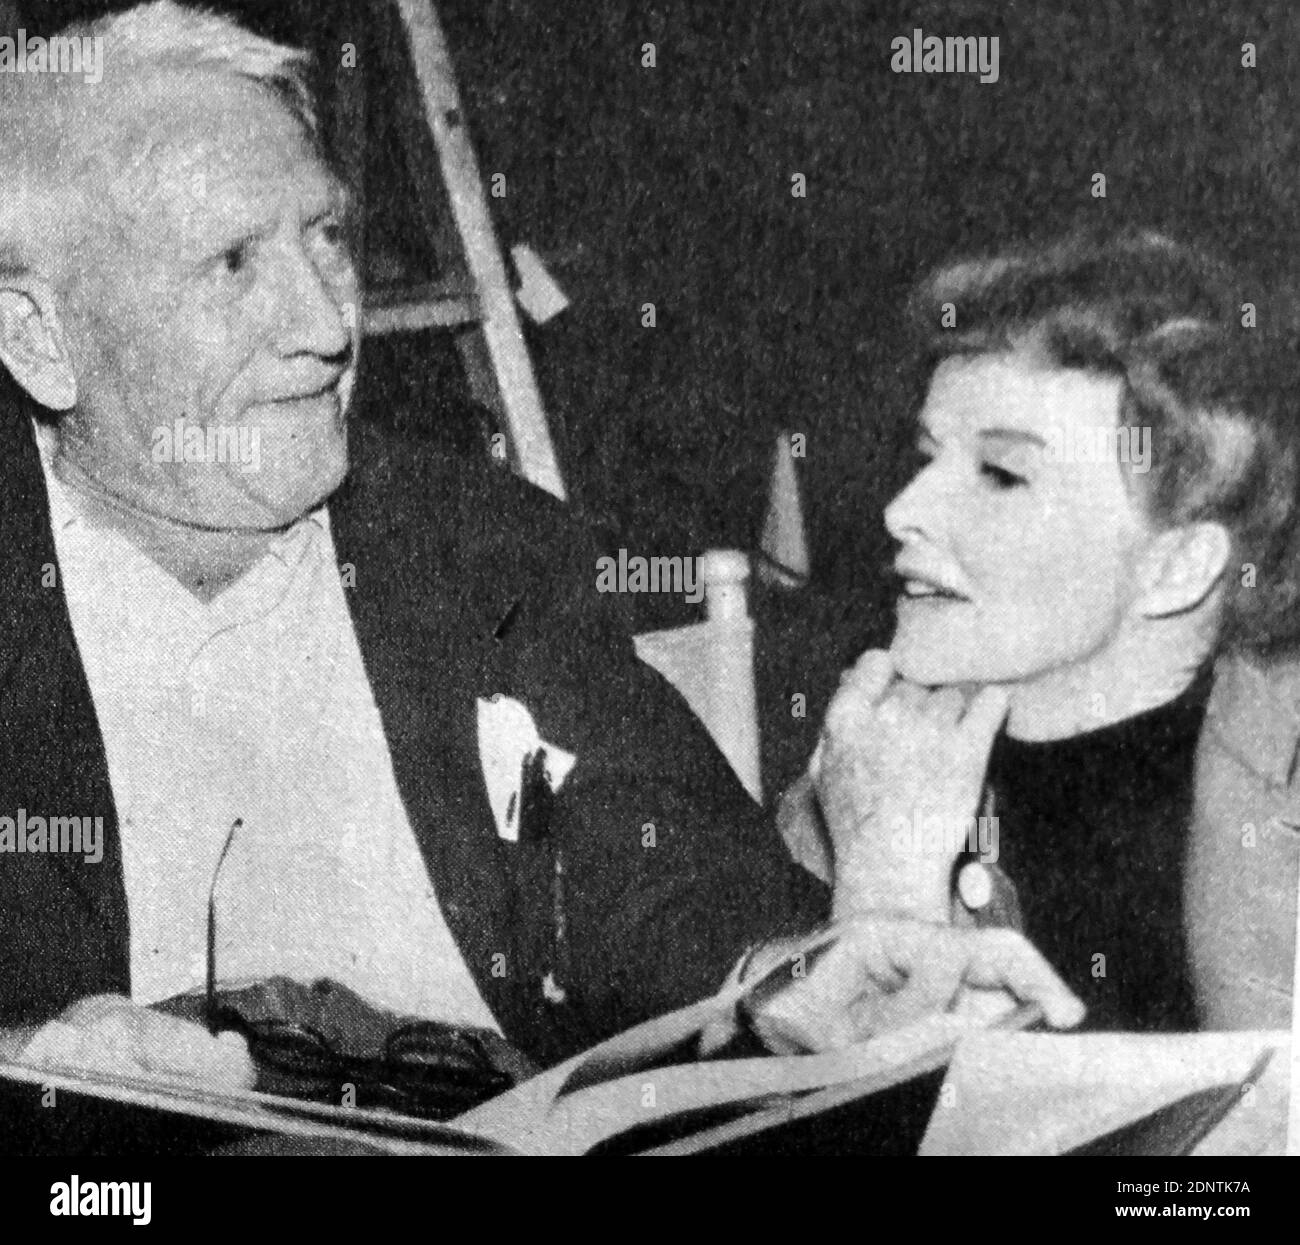 Foto von Spencer Tracy (1900-1967) und Katherine Hepburn (1907-2003) auf dem Set von "Guess Who's Coming to Dinner". Stockfoto